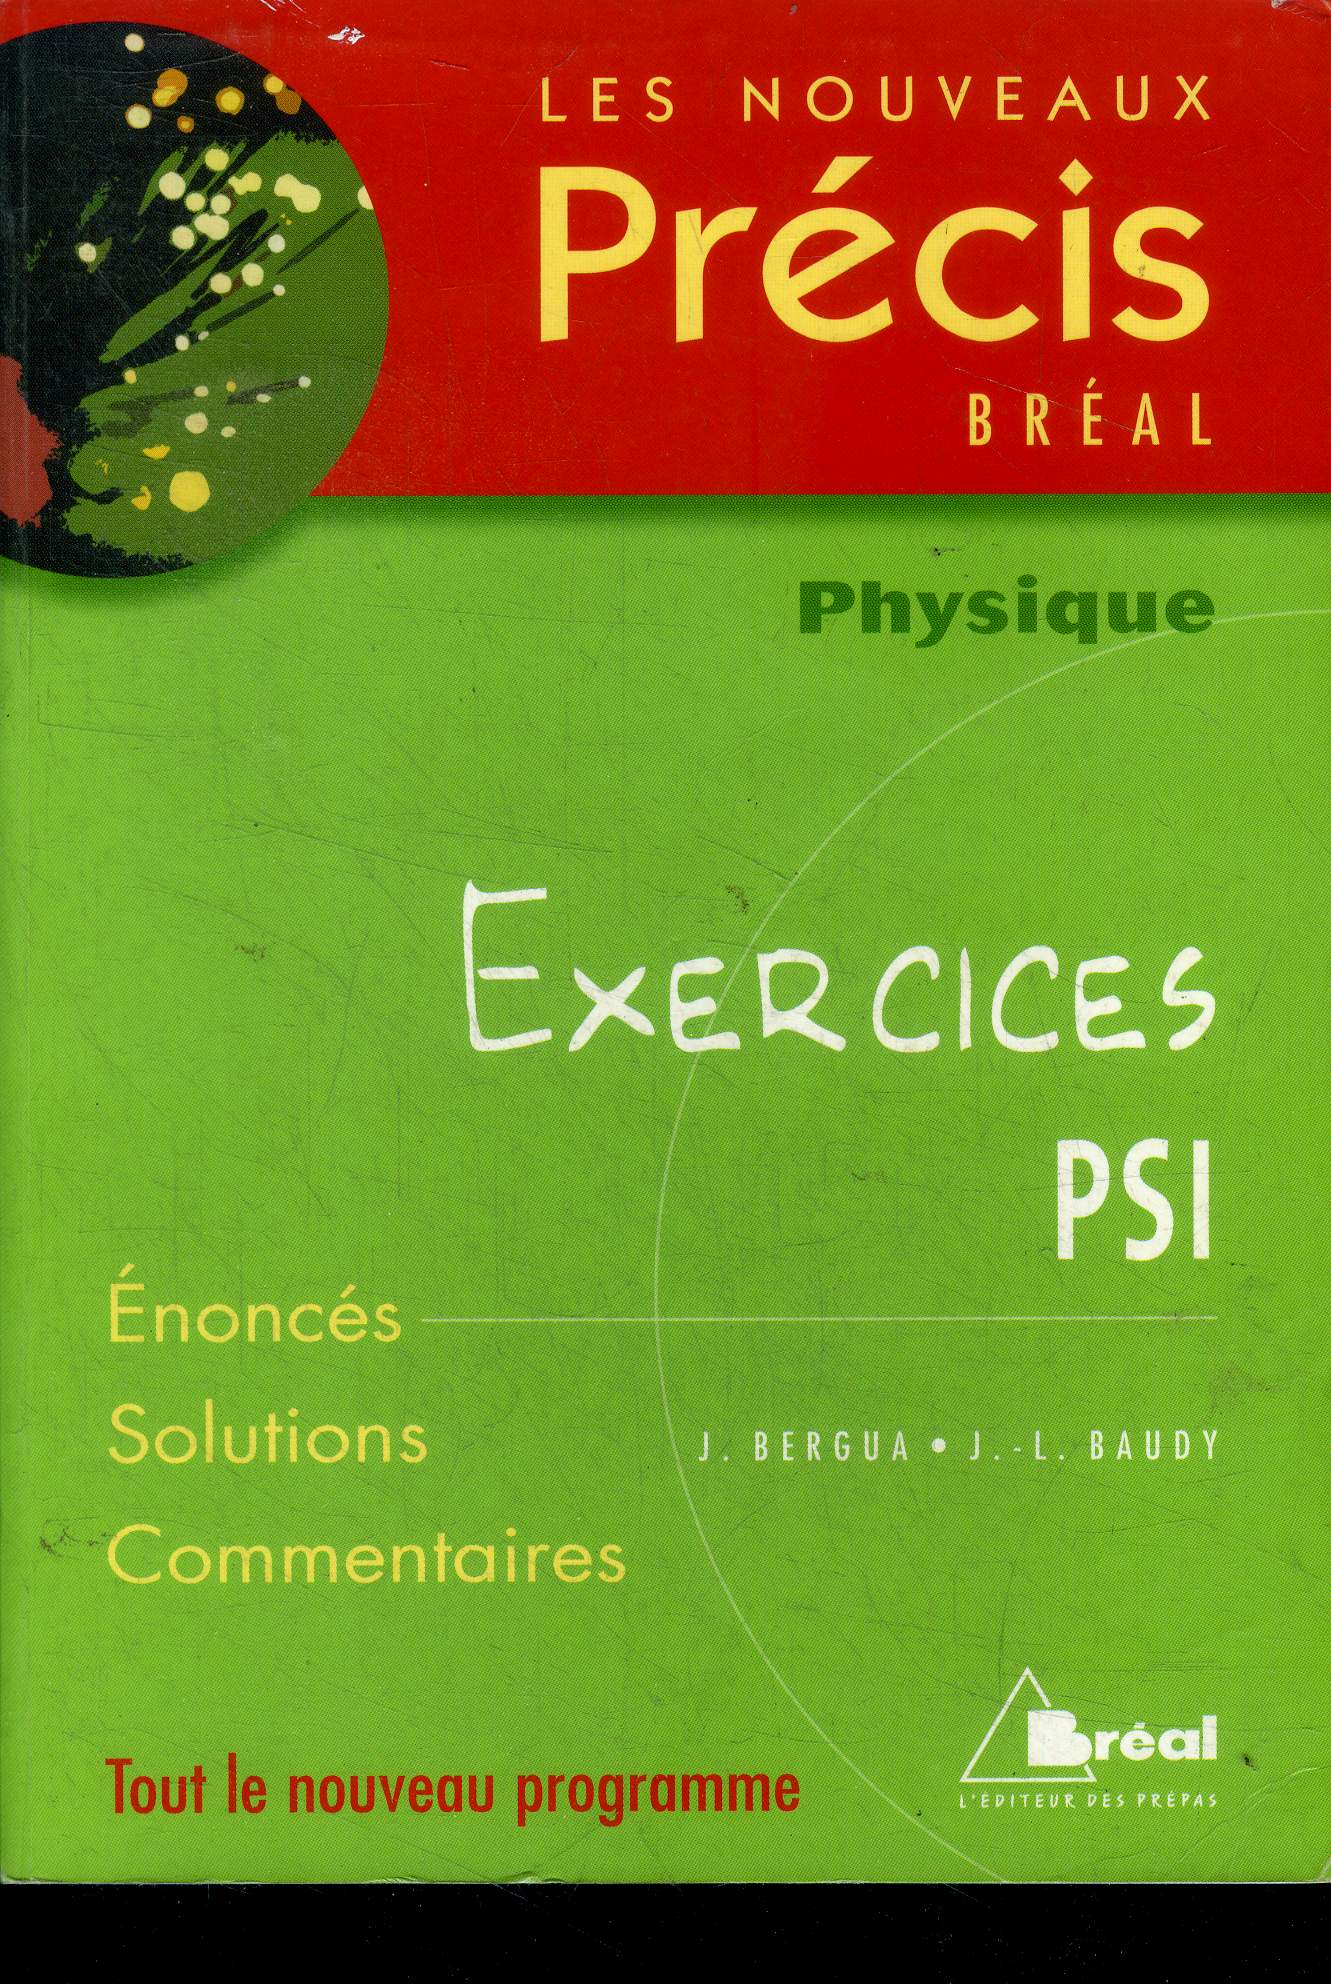 Physique : Exercices PSI - les nouveaux precis breal- enonces, solutions, commentaires- tout le nouveau programme